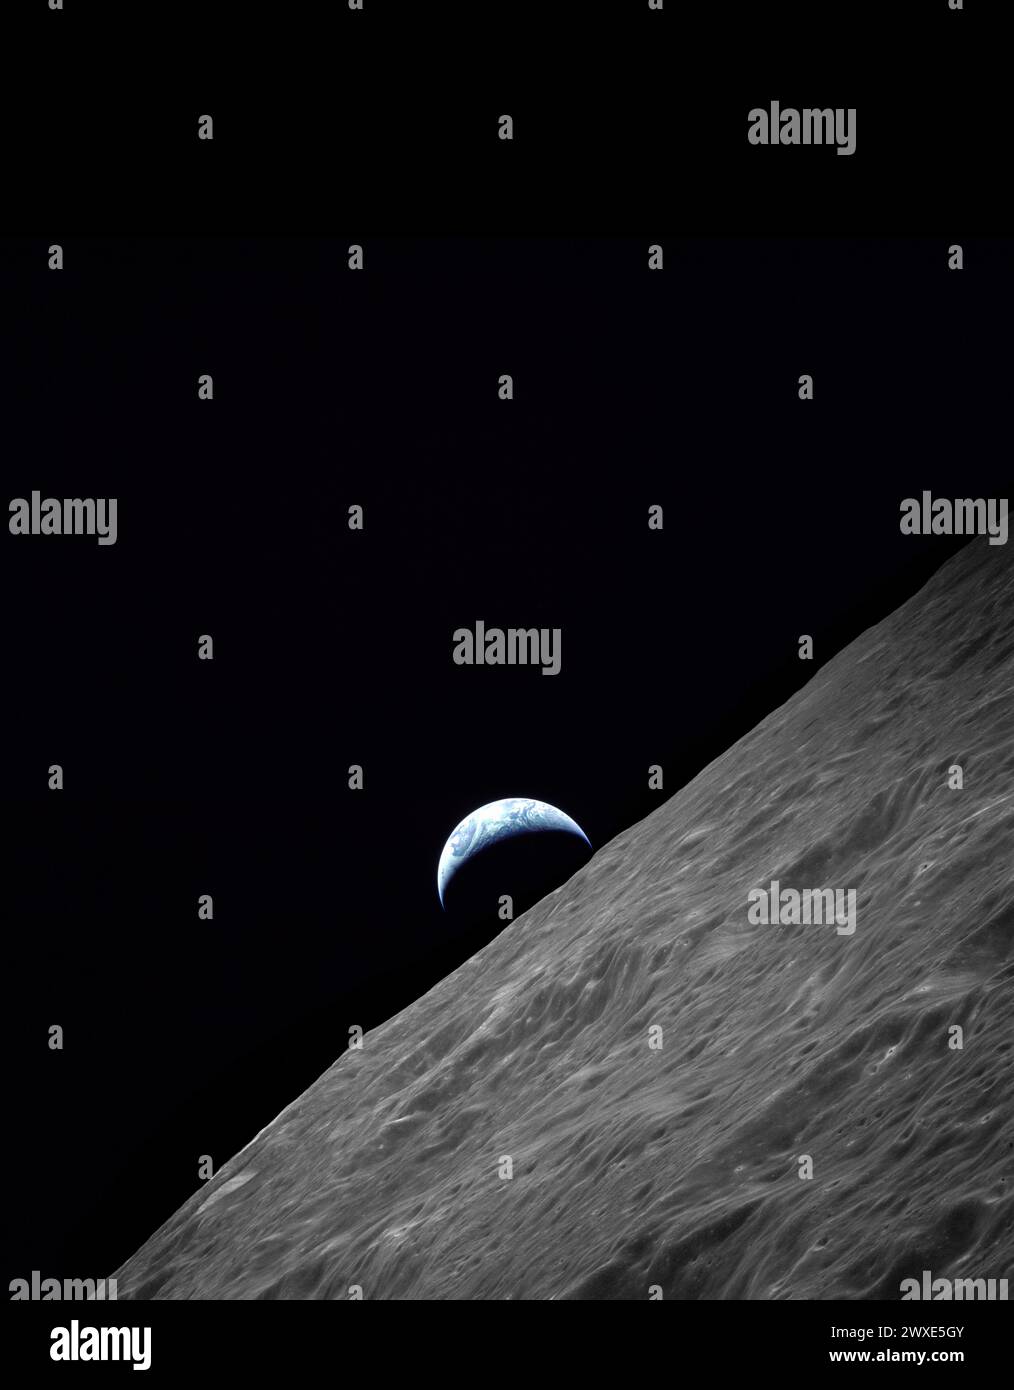 Alba sulla Luna durante il viaggio di Apollo 17 verso la luna. Ultima missione lunare con equipaggio del NASA. Vista della Terra a mezzaluna che si innalza sopra l'orizzonte lunare sul cratere Ritz. Immagine scattata durante la missione Apollo 17 del 1972 su Revolution 66. La rivista di film originale è stata etichettata PP. Il tipo di pellicola era SO-368 Color Ektachrome MS CEX, Color Reversal, 250mm Lens., Longitude 97,6 East, Azimuth 263, altitudine 113 km Un'immagine NASA ottimizzata. Credito: NASA Image ha aggiunta di spazio nero alla parte superiore dell'immagine. Il formato dell'immagine originale era quadrato. Foto Stock